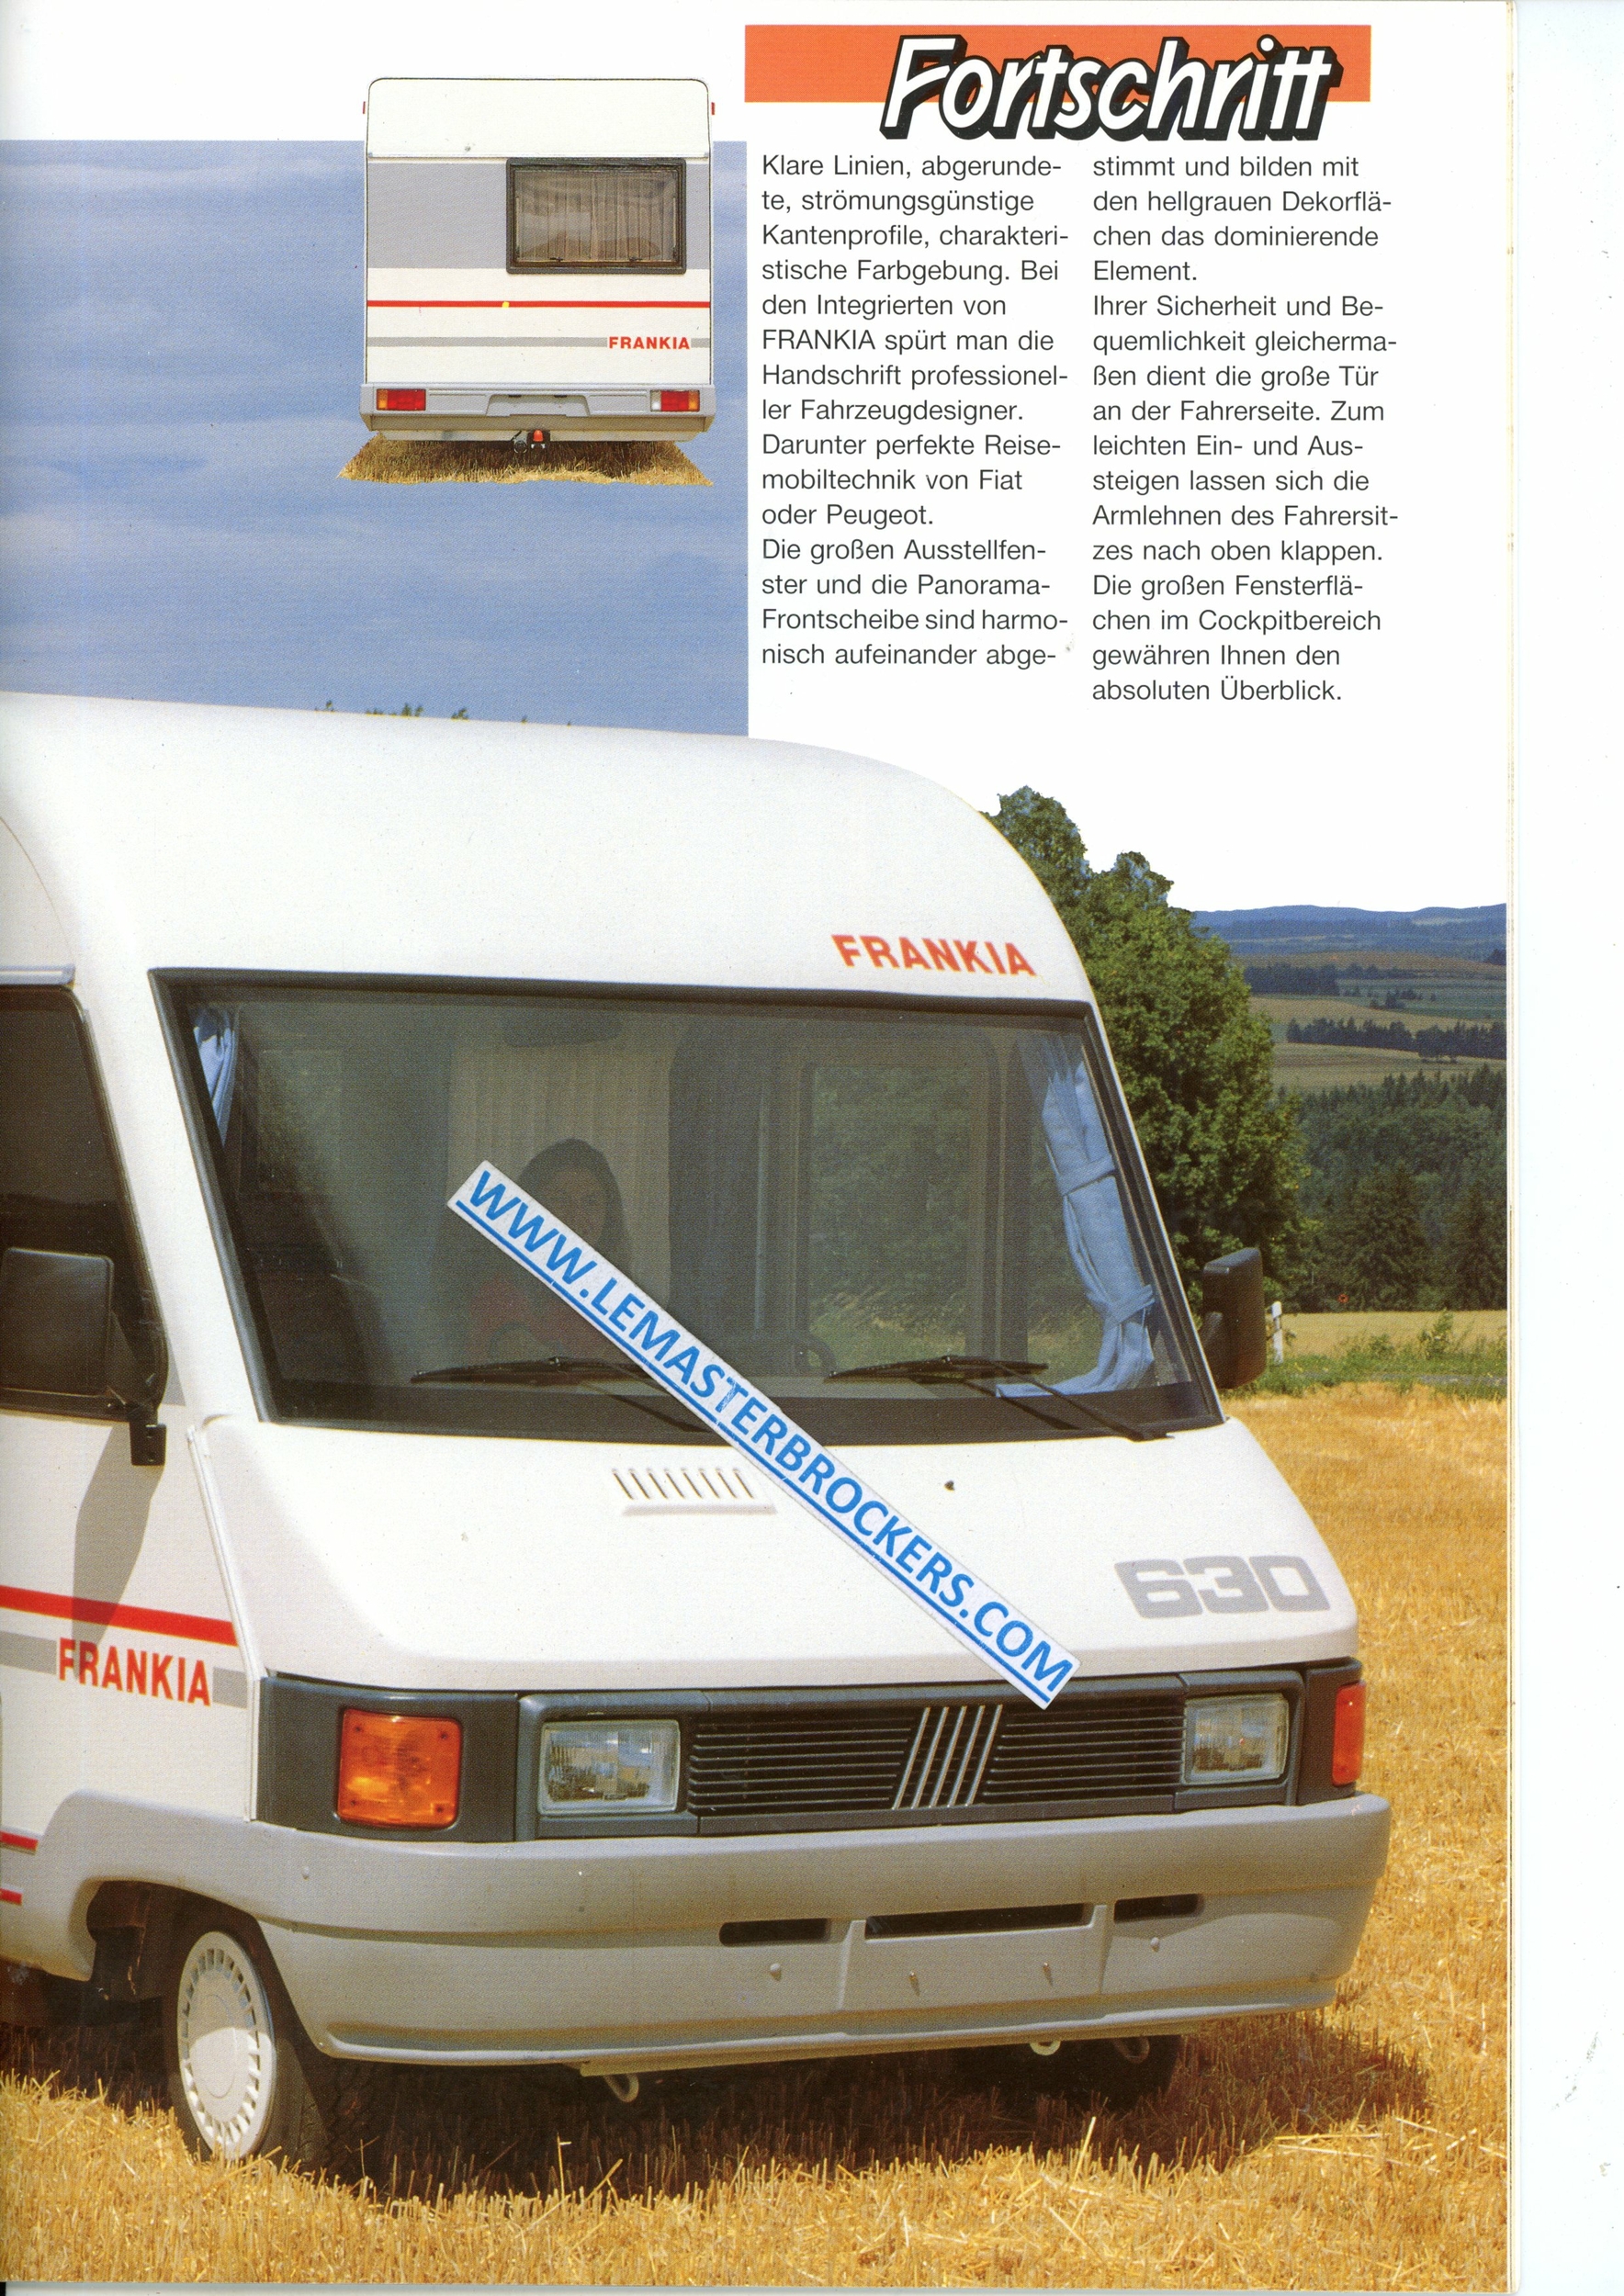 FRANKIA 1990 ET UN CATALOGUE DE CAMPING-CAR EN ALLEMAND